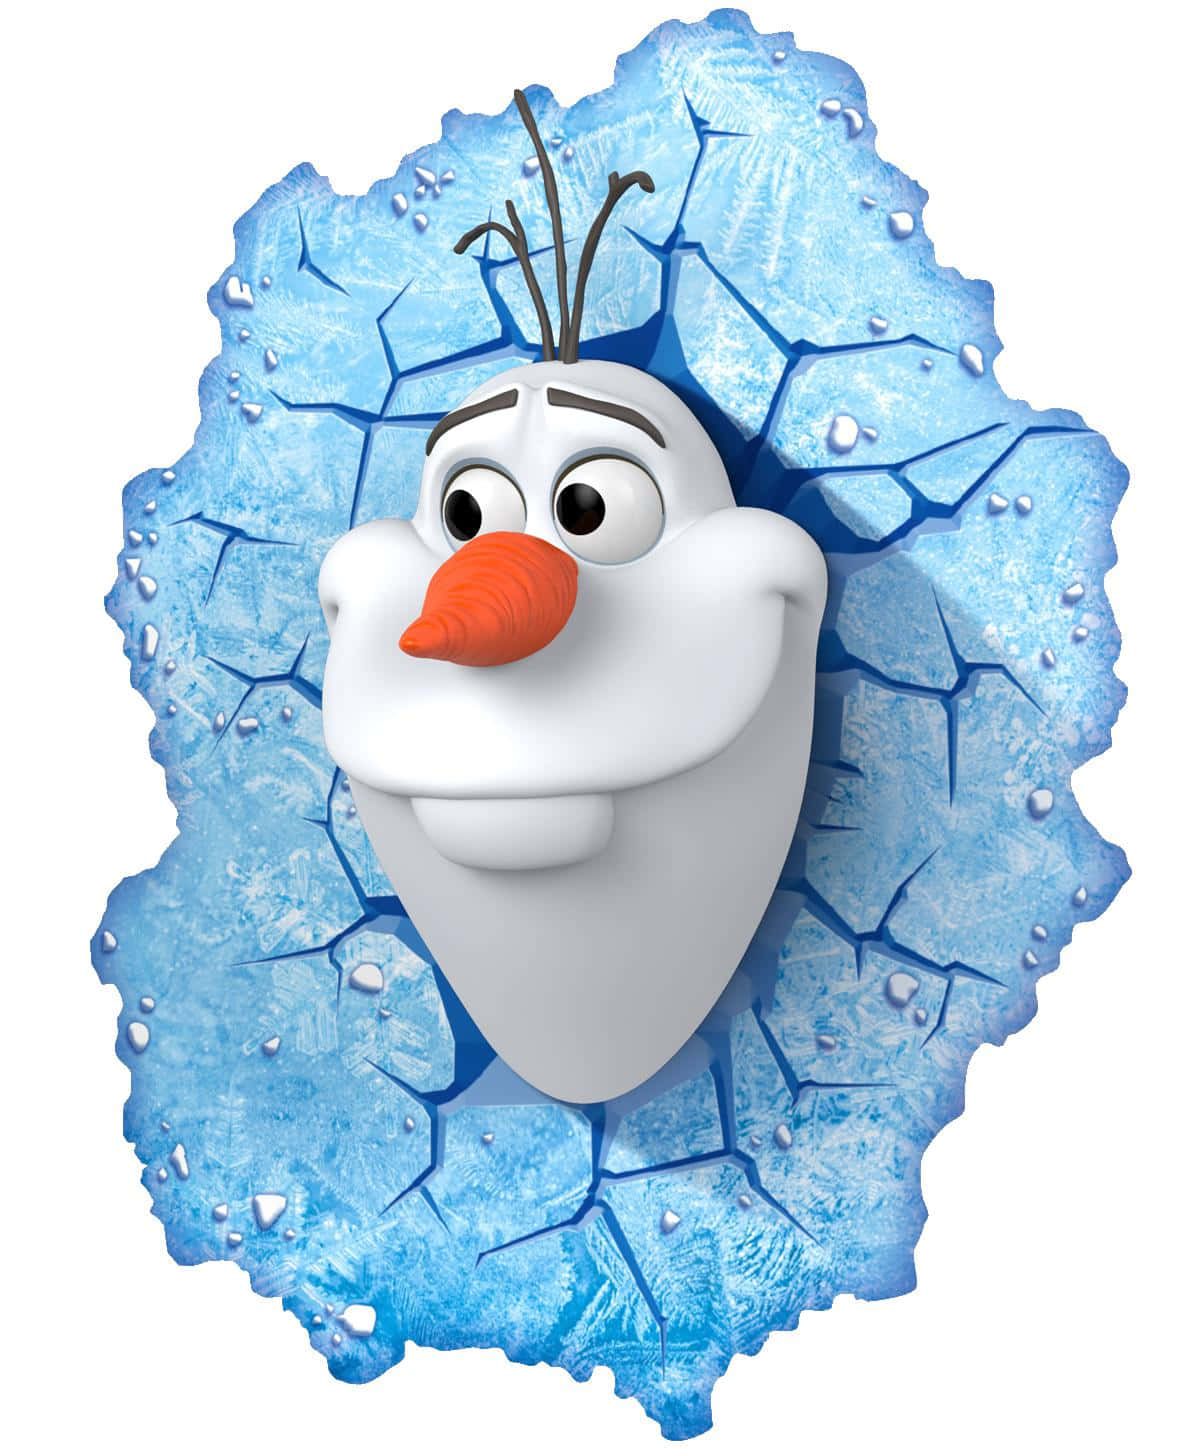 Låtoss Ha Lite Kul I Snön Med Olaf!